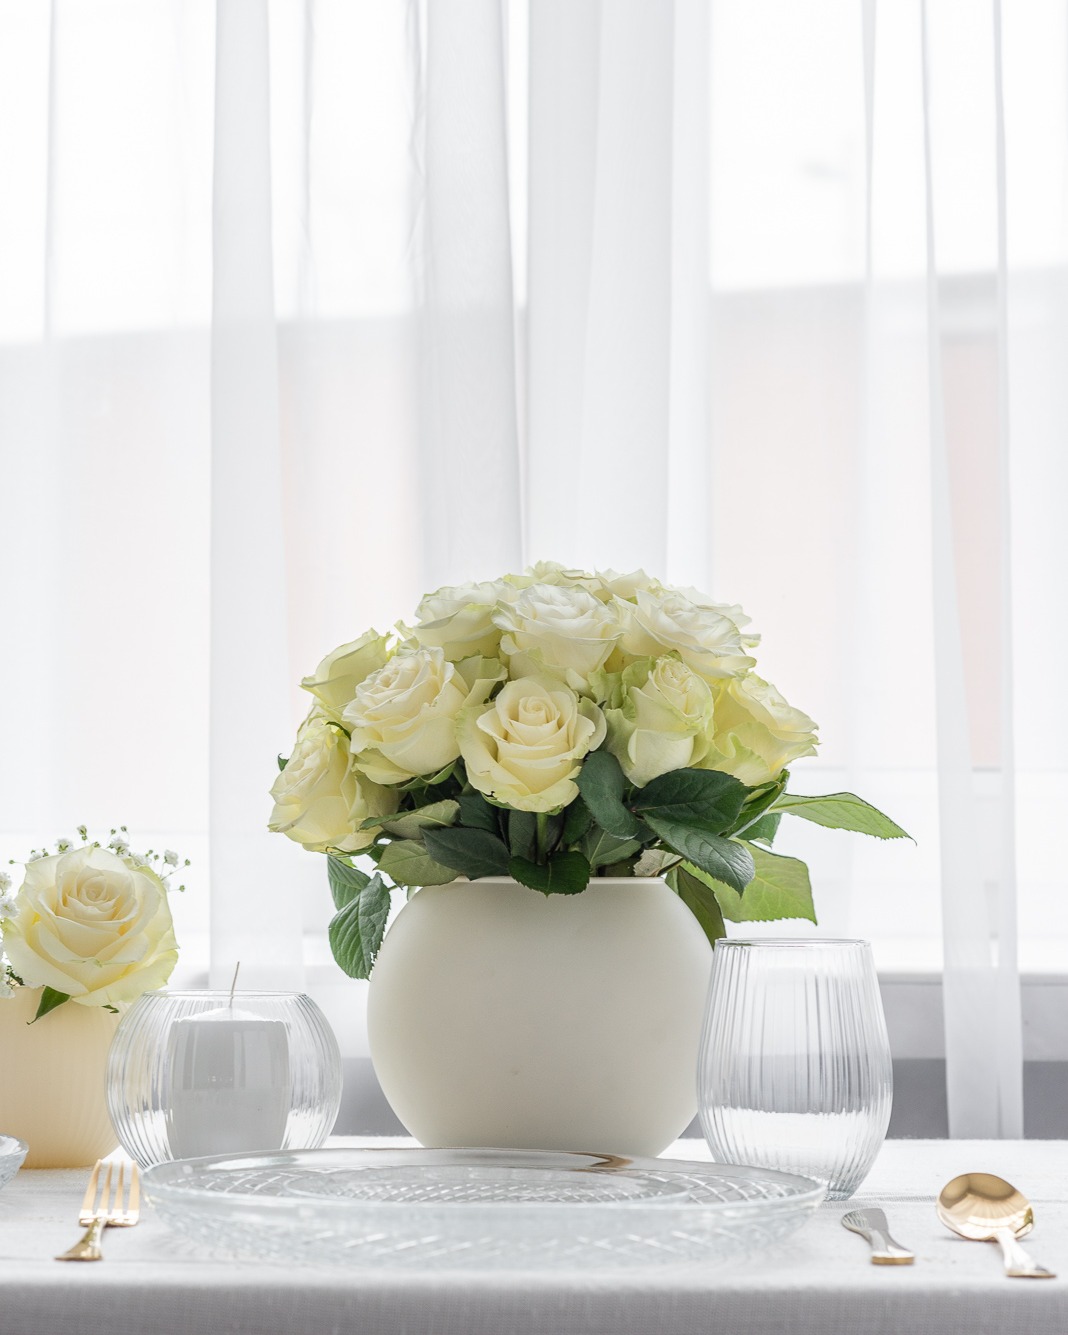 Szklana kula użyta jako wazon do kwiatów ciętych